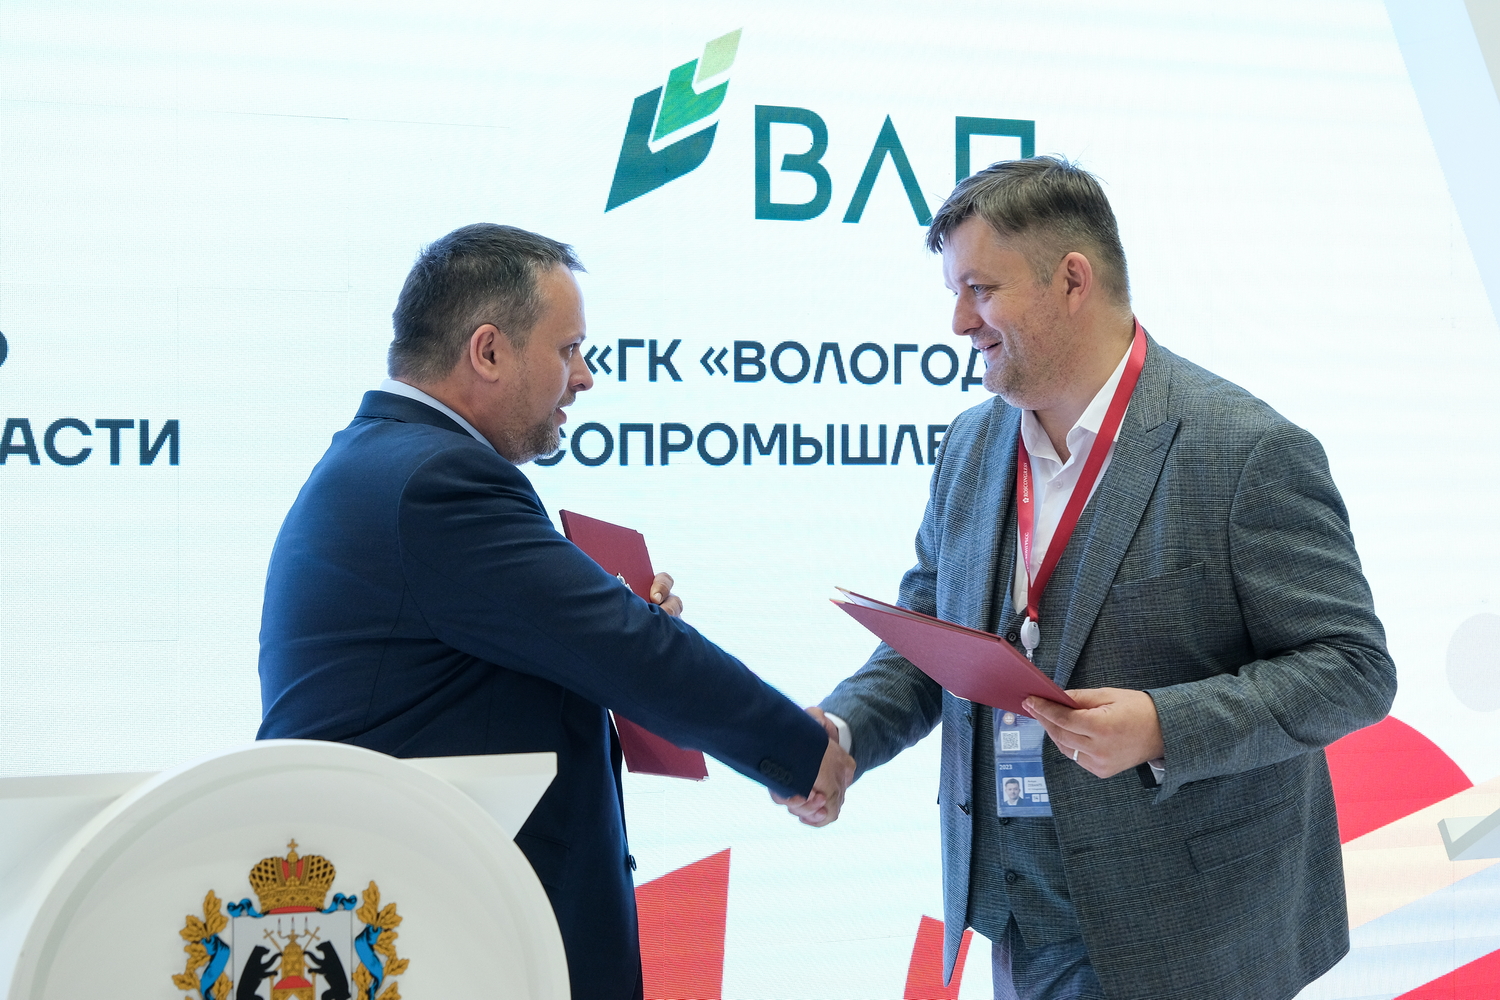 «Вологодские лесопромышленники» реализуют в Новгородской области инвестпроект на сумму 2,6 млрд рублей